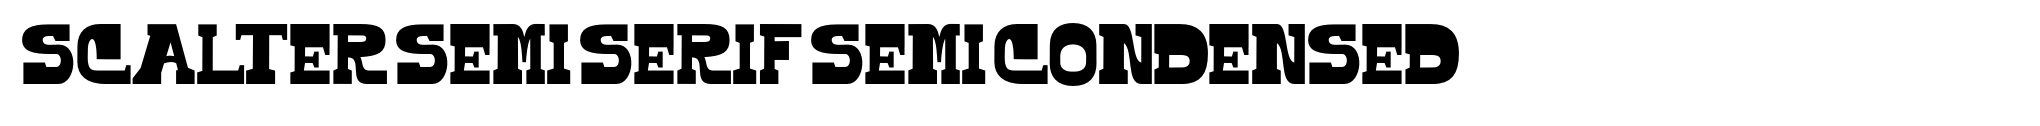 Scalter Semi Serif Semi Condensed image